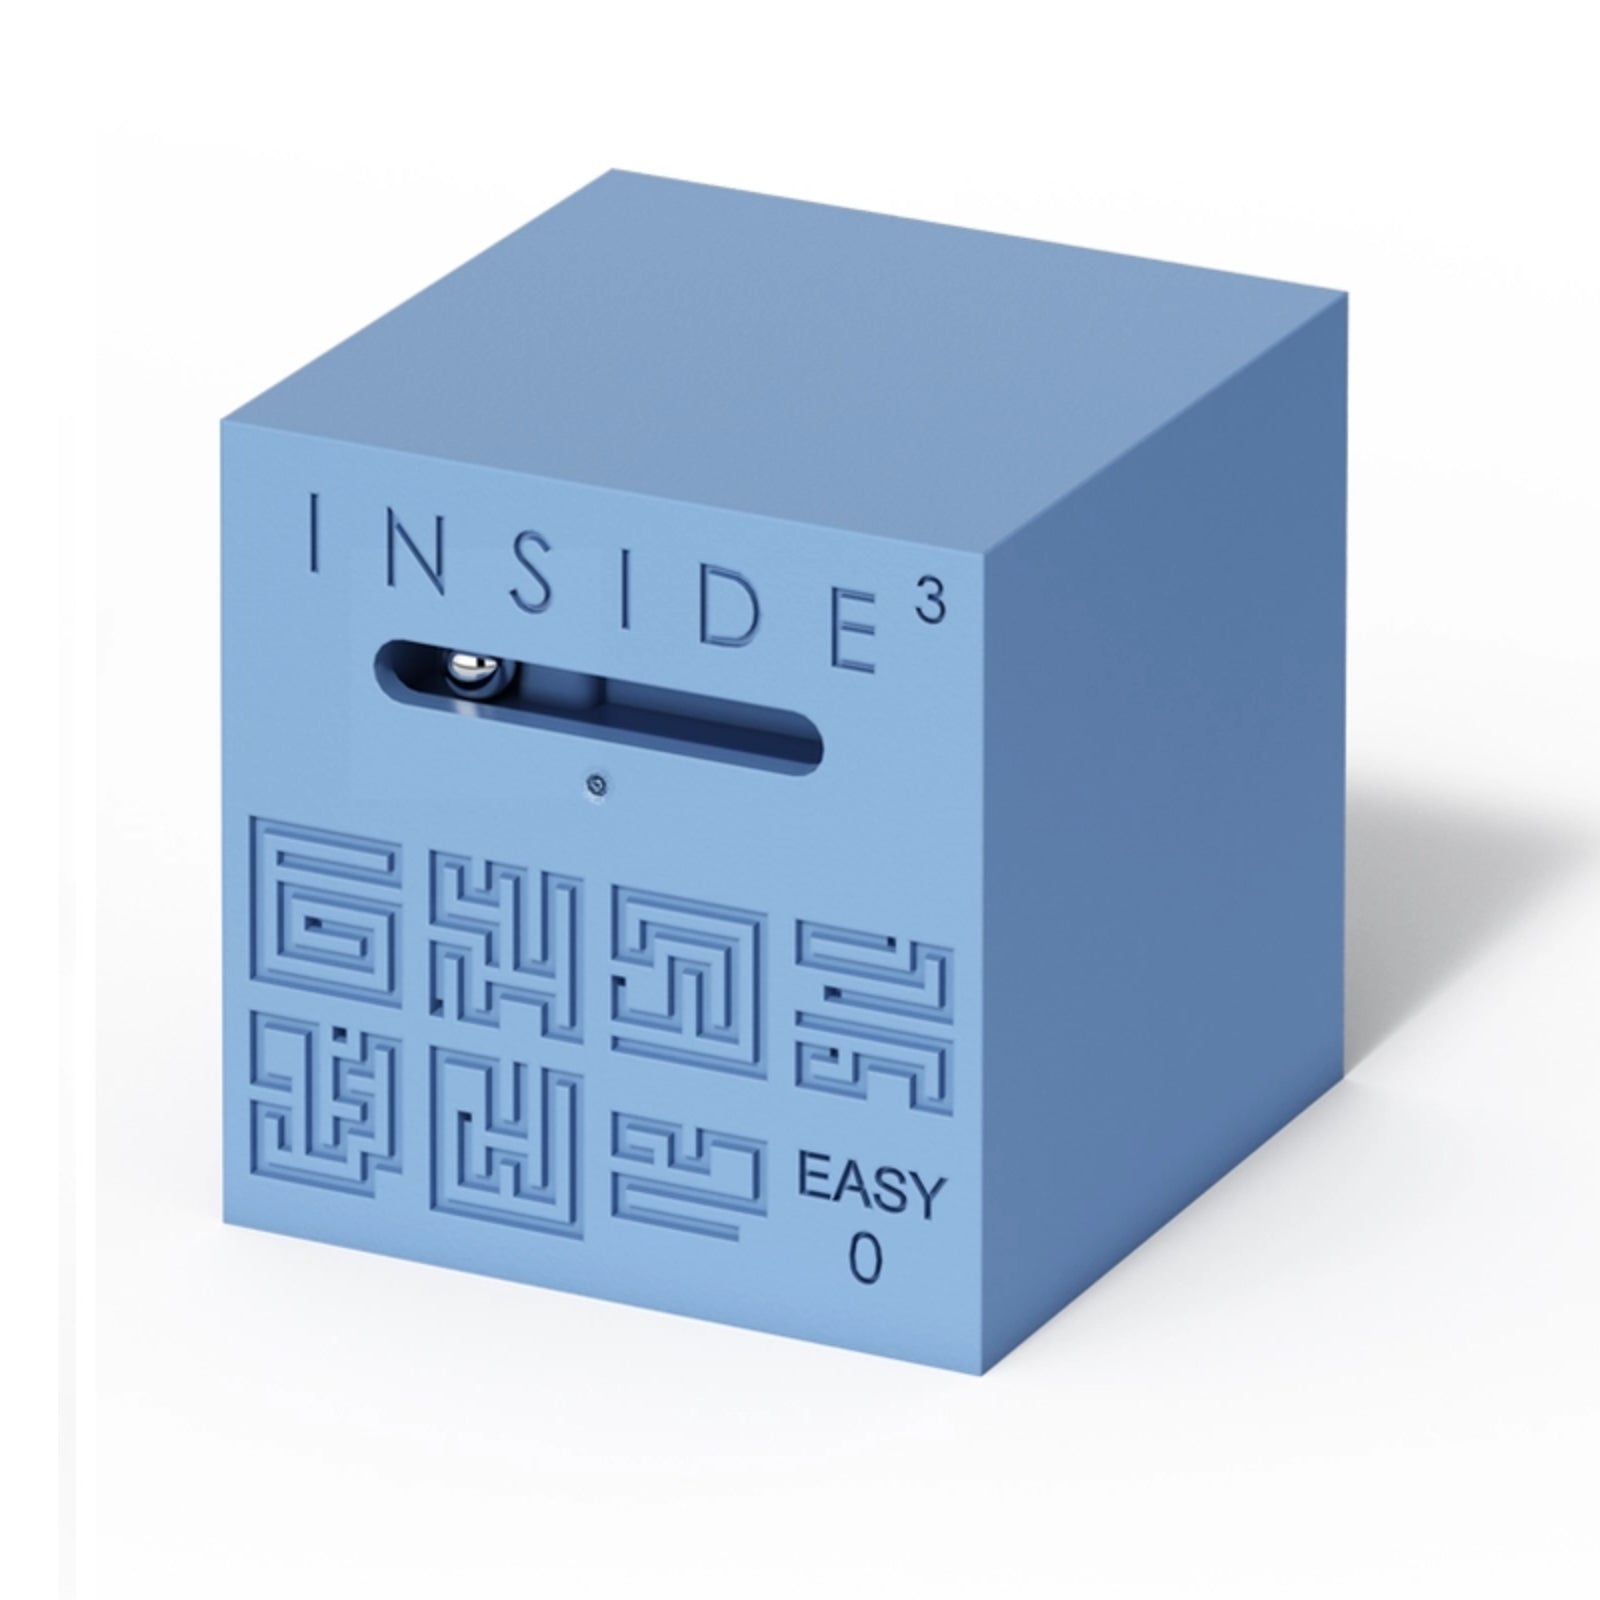 Inside3 - Easy 0 - Level 3 - Doug Solutions